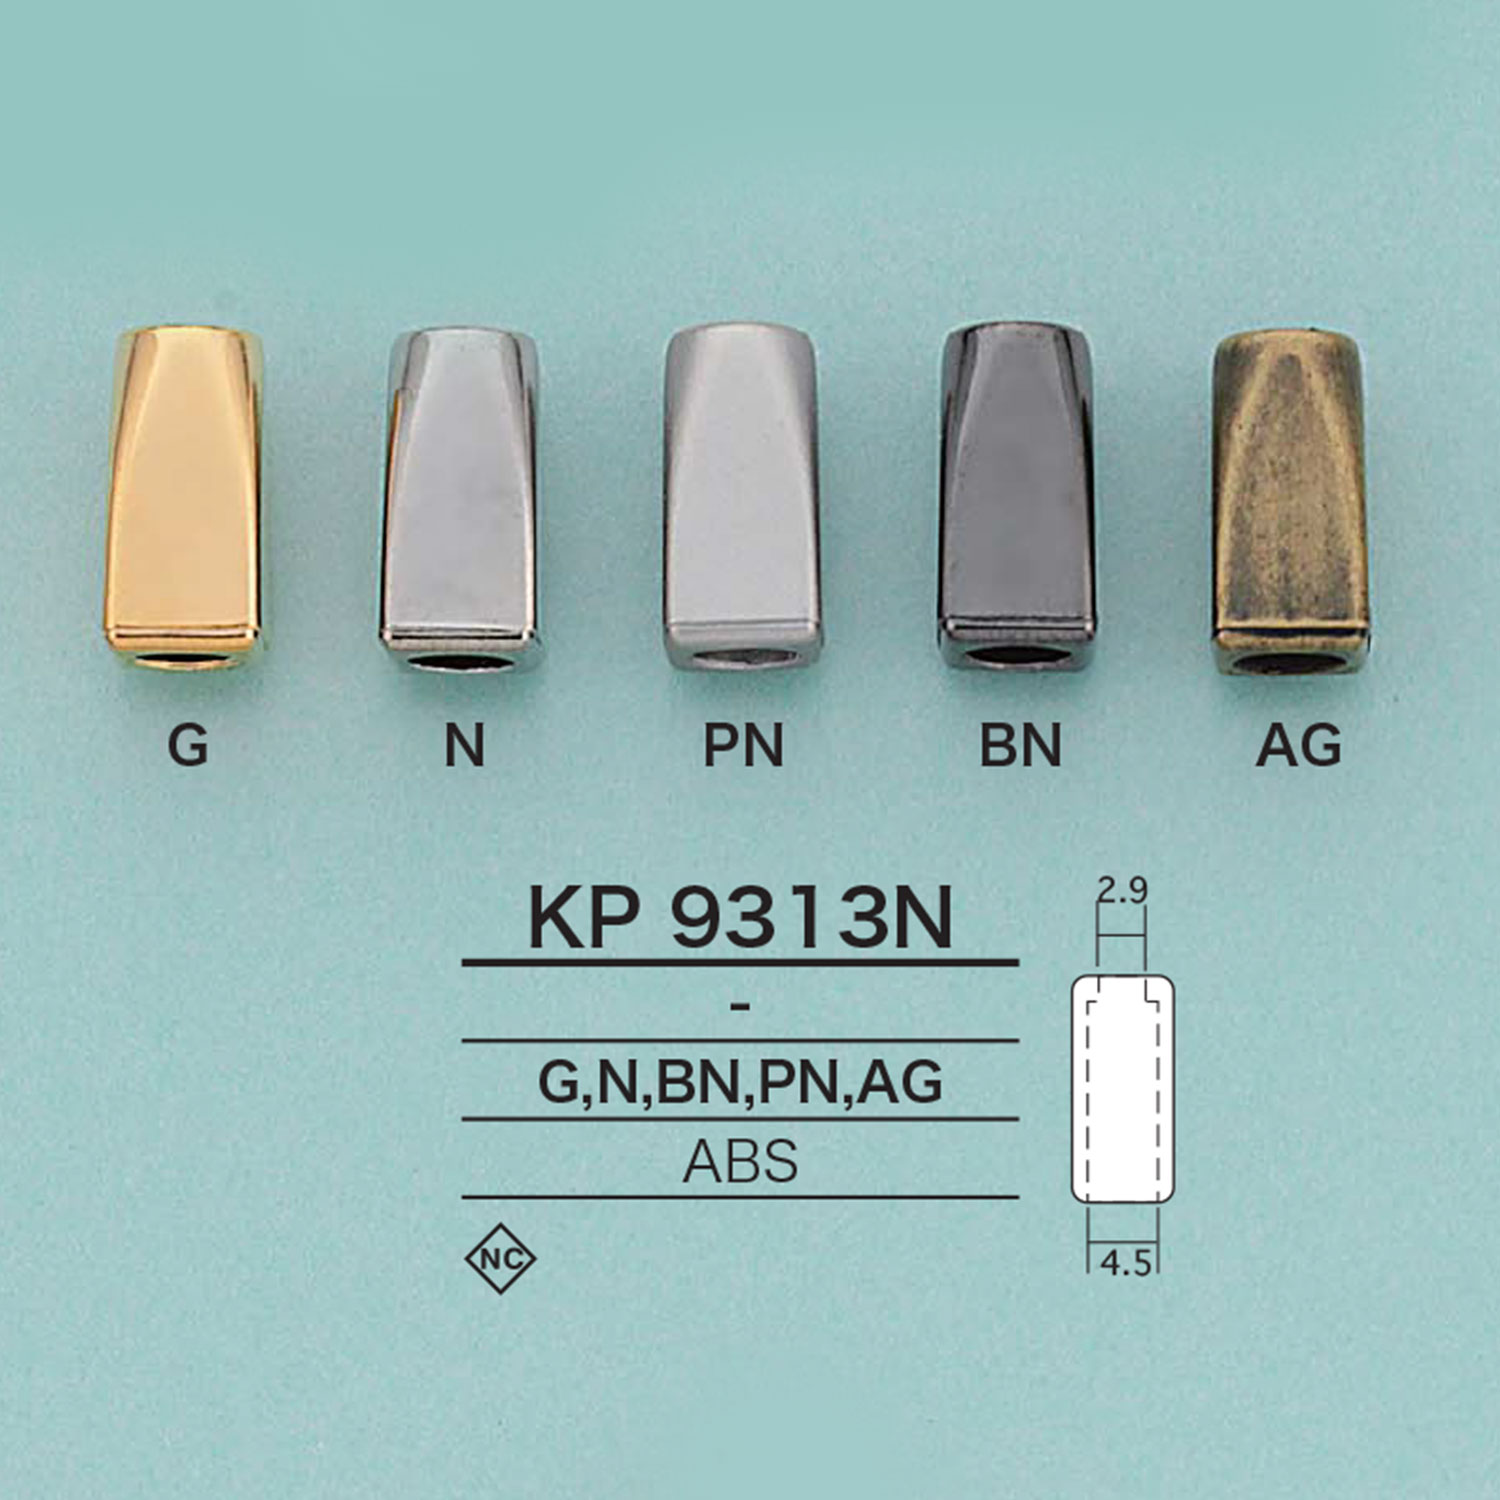 KP9313N 繩帽[扣和環] 愛麗絲鈕扣